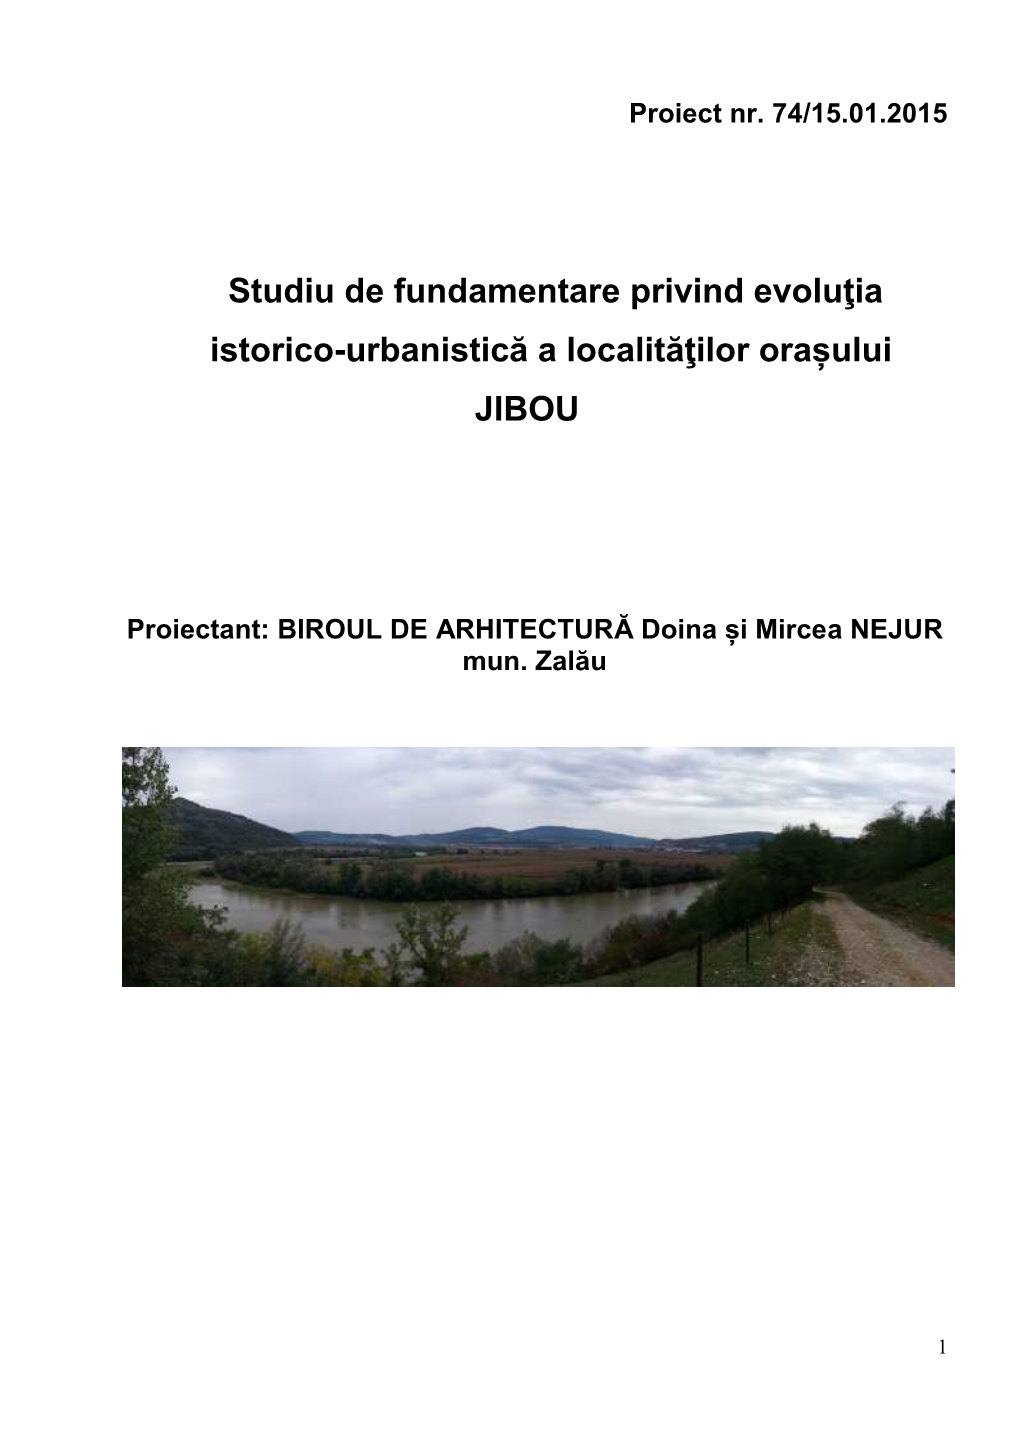 Studiu De Fundamentare Privind Evoluţia Istorico-Urbanistică a Localităţilor Orașului JIBOU